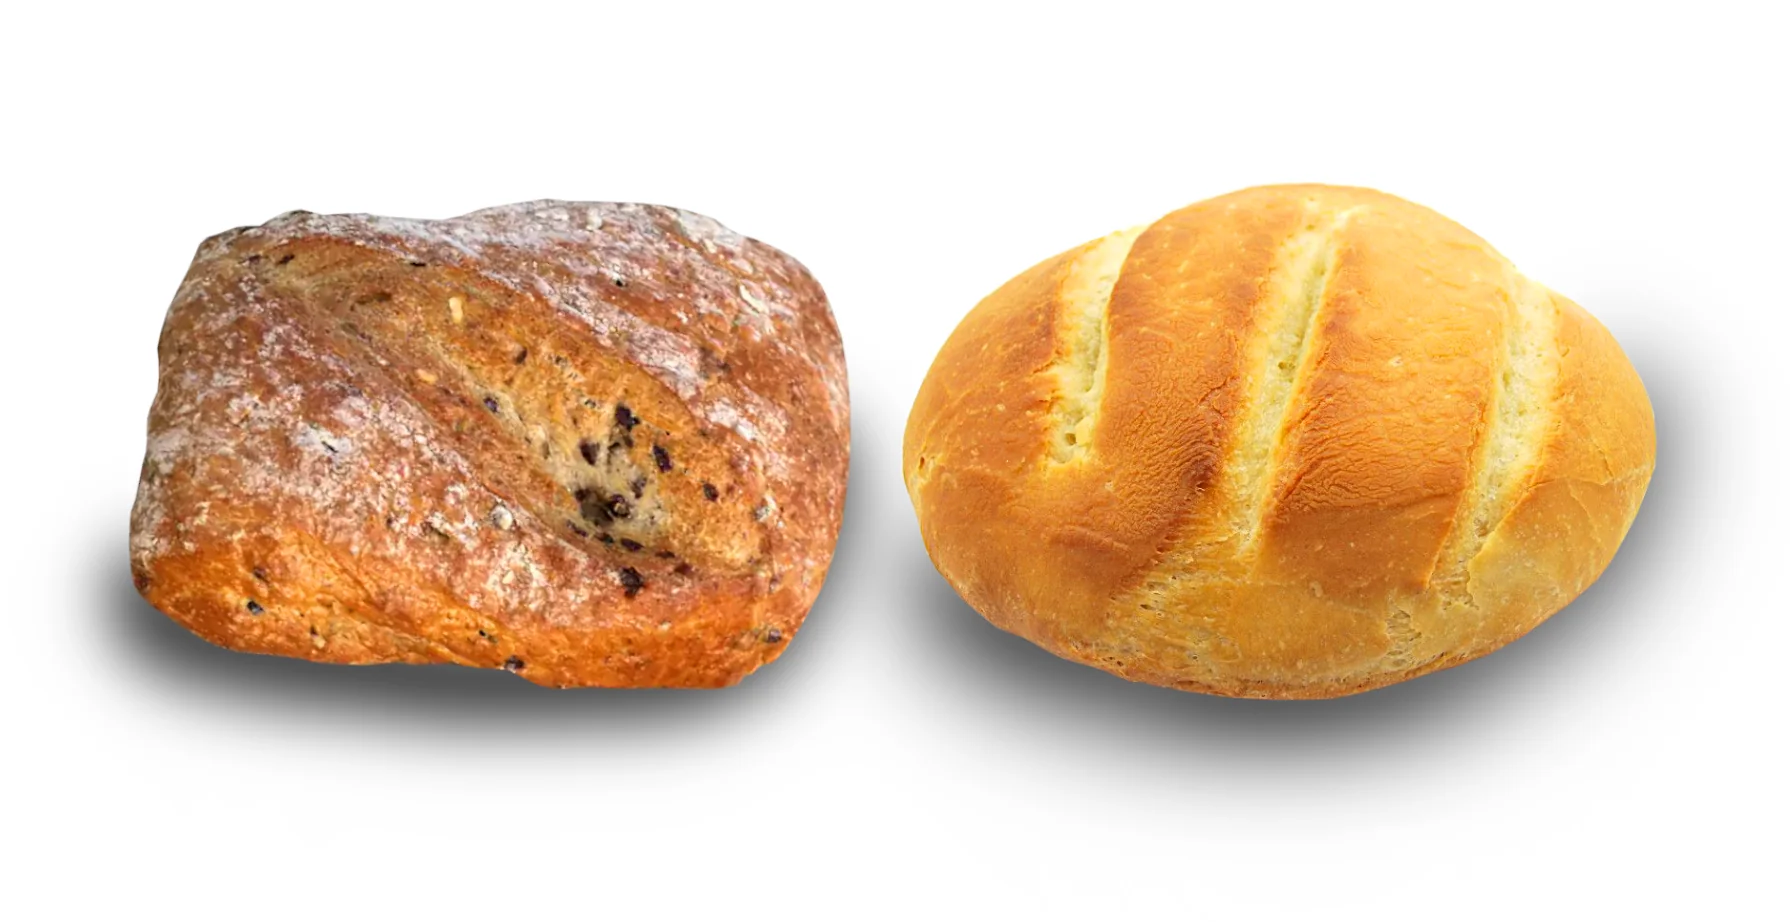 sourdough vs whole wheat bread